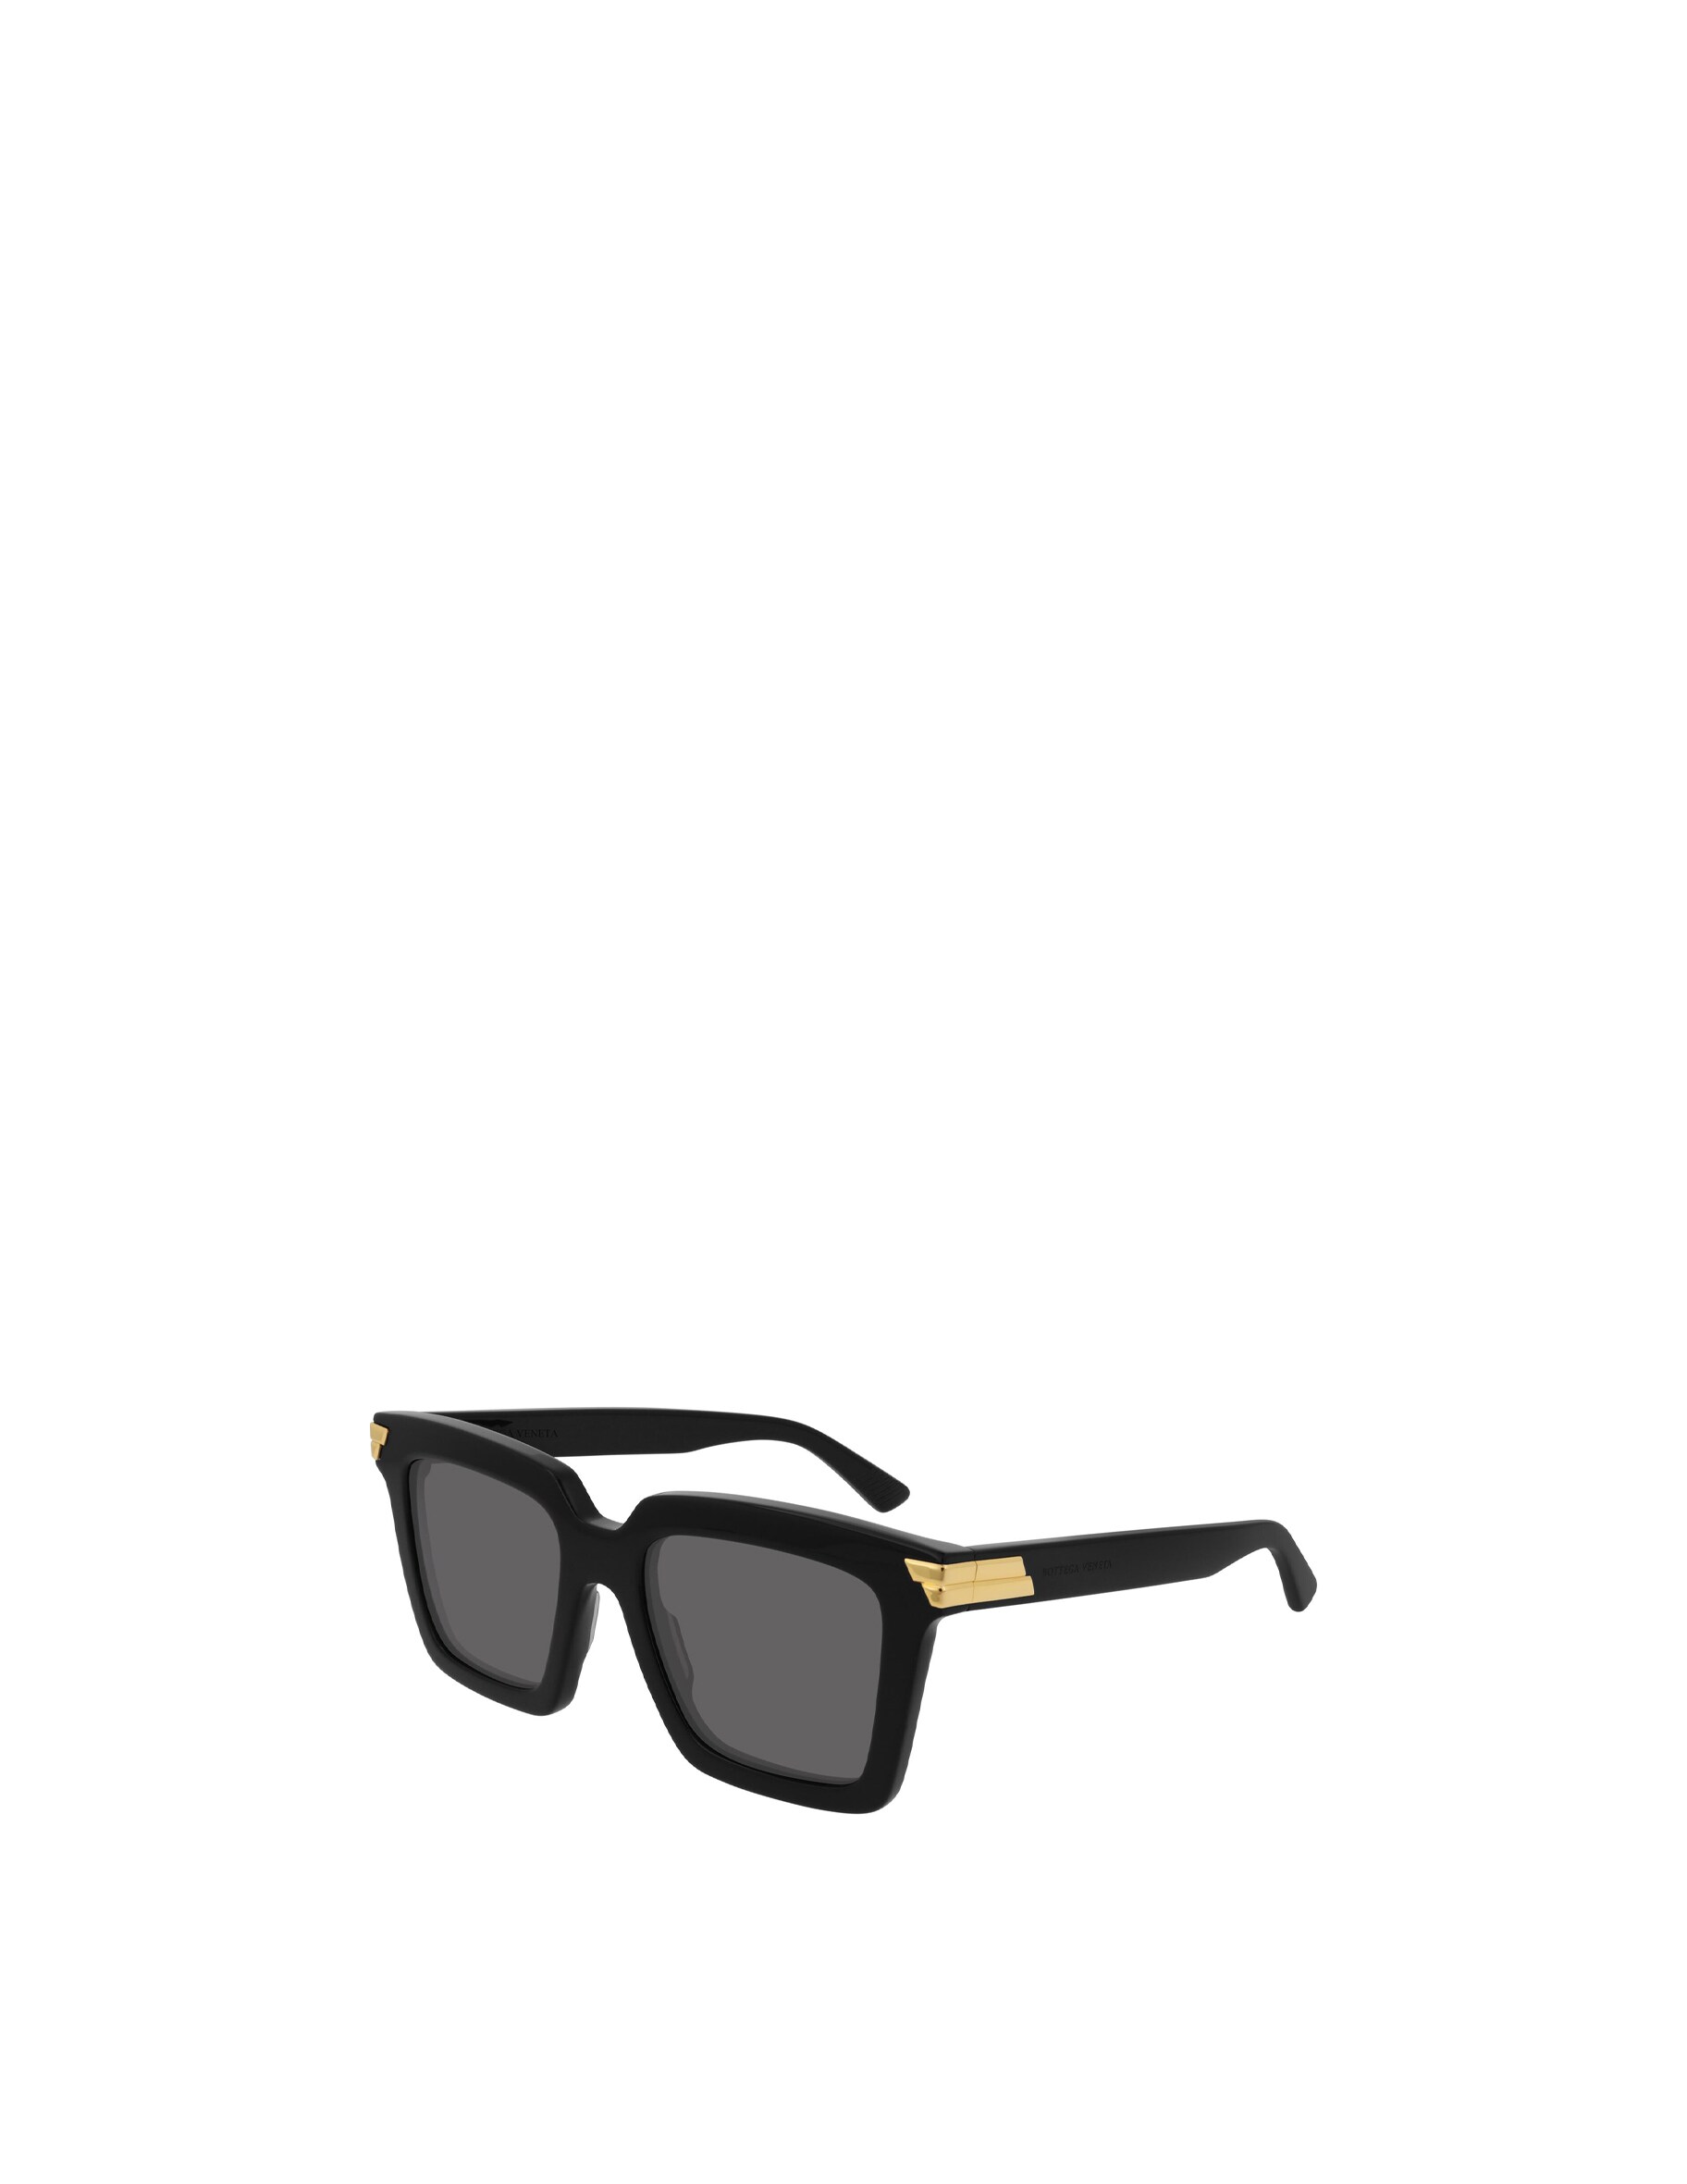 Женственные солнцезащитные очки квадратной формы BV1005S Bottega Veneta, цвет Shiny Black цена и фото